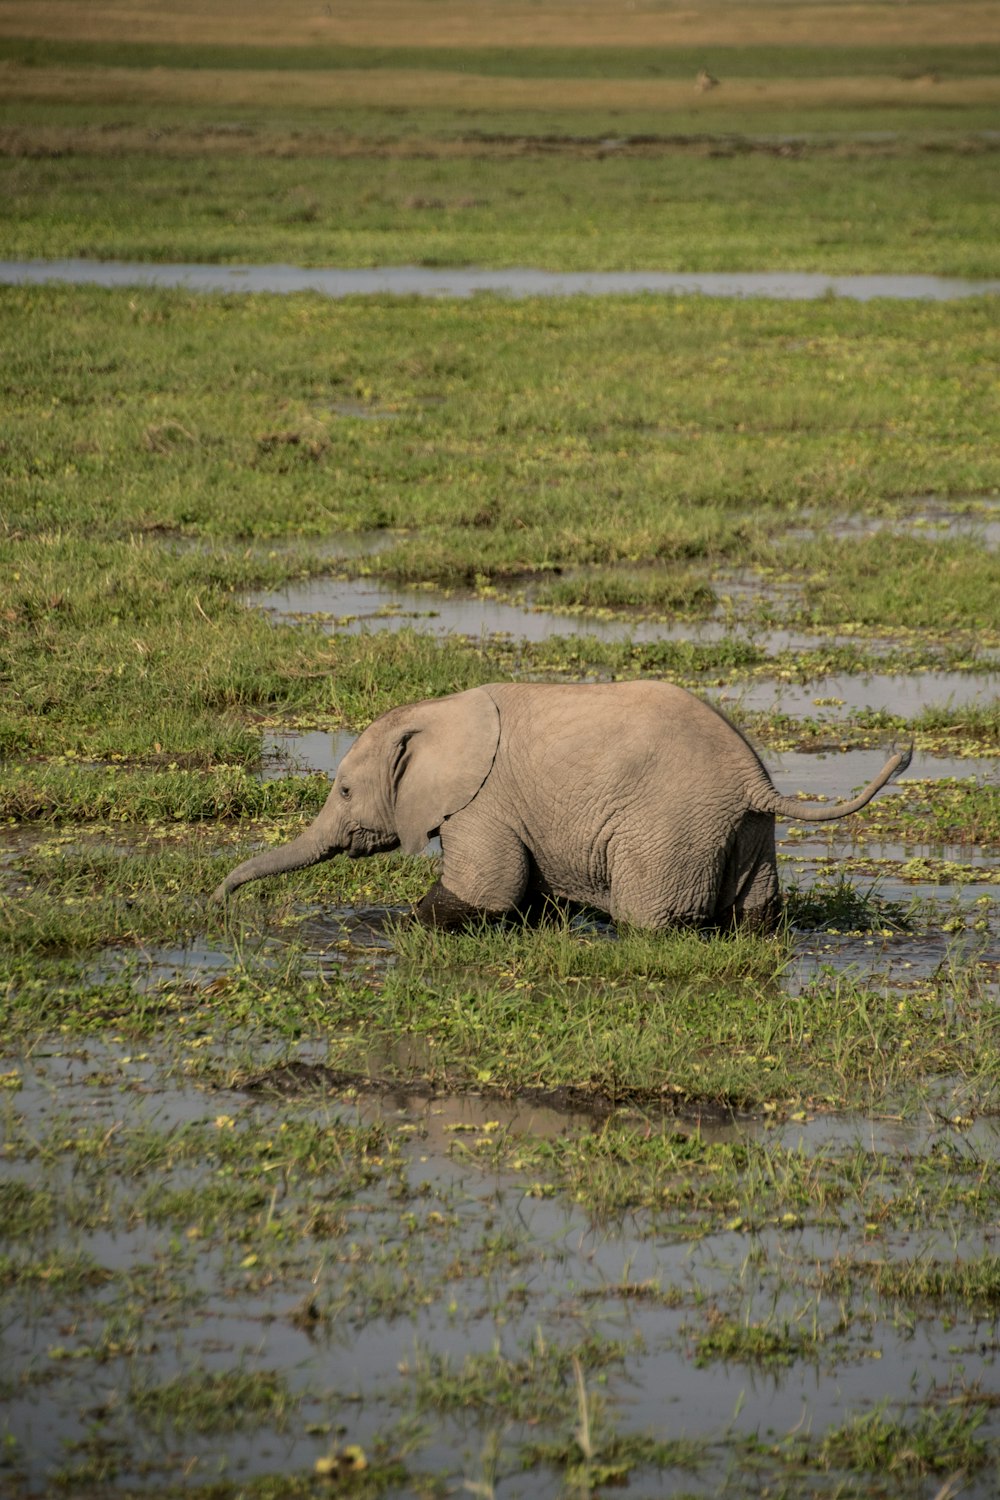 a baby elephant walking through a muddy field